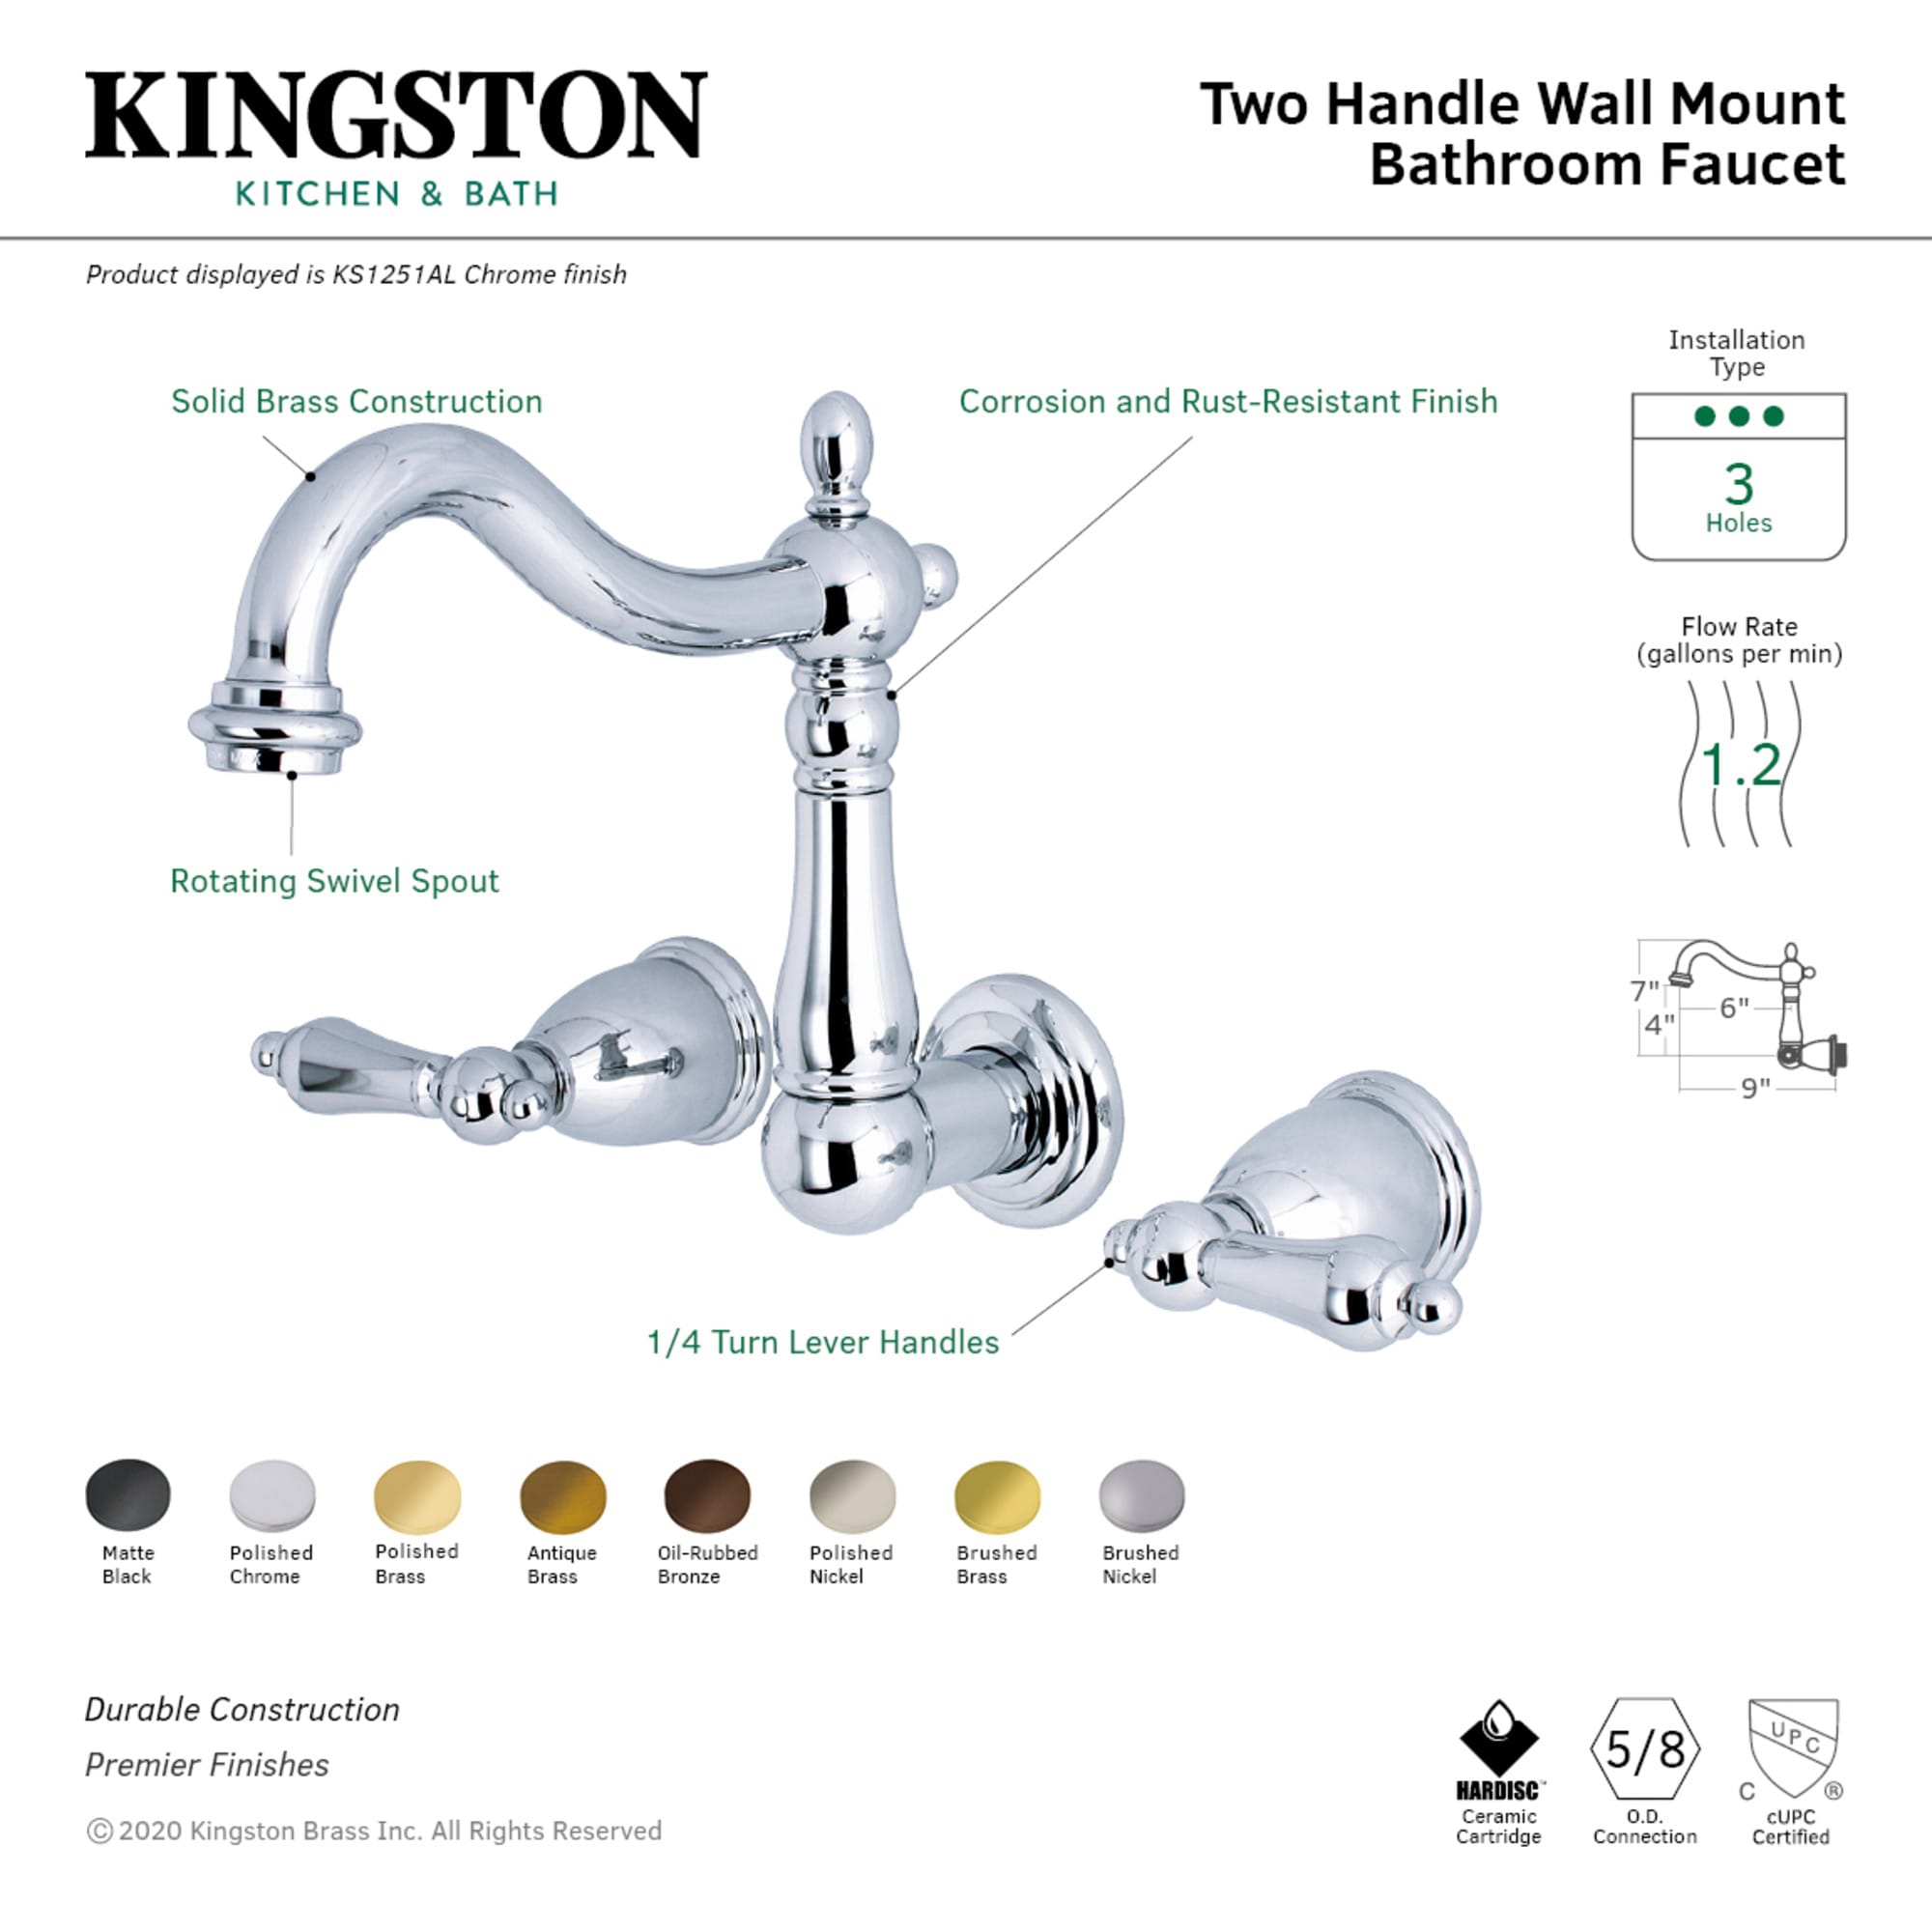 Kingston Brass Water Onyx Antique Brass Double-Hook Wall Mount Towel Hook | WLBA9117AB